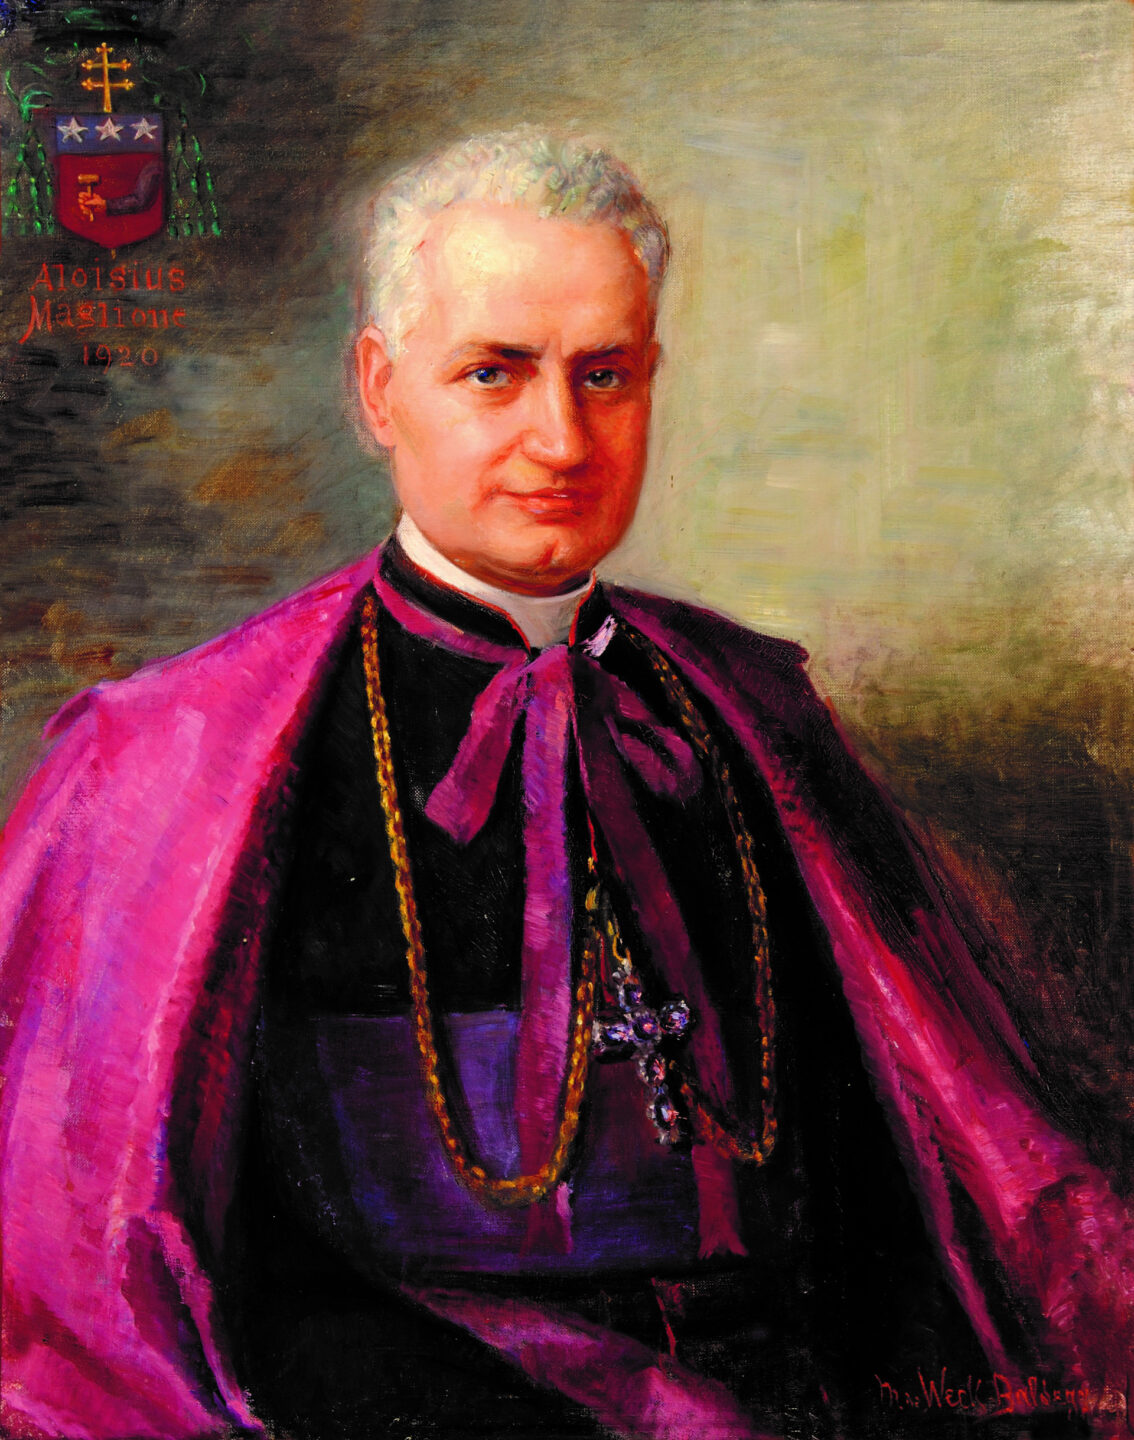 Luigi Maglione, der erste Berner Nuntius, trat am 8. November 1920 sein Amt an.